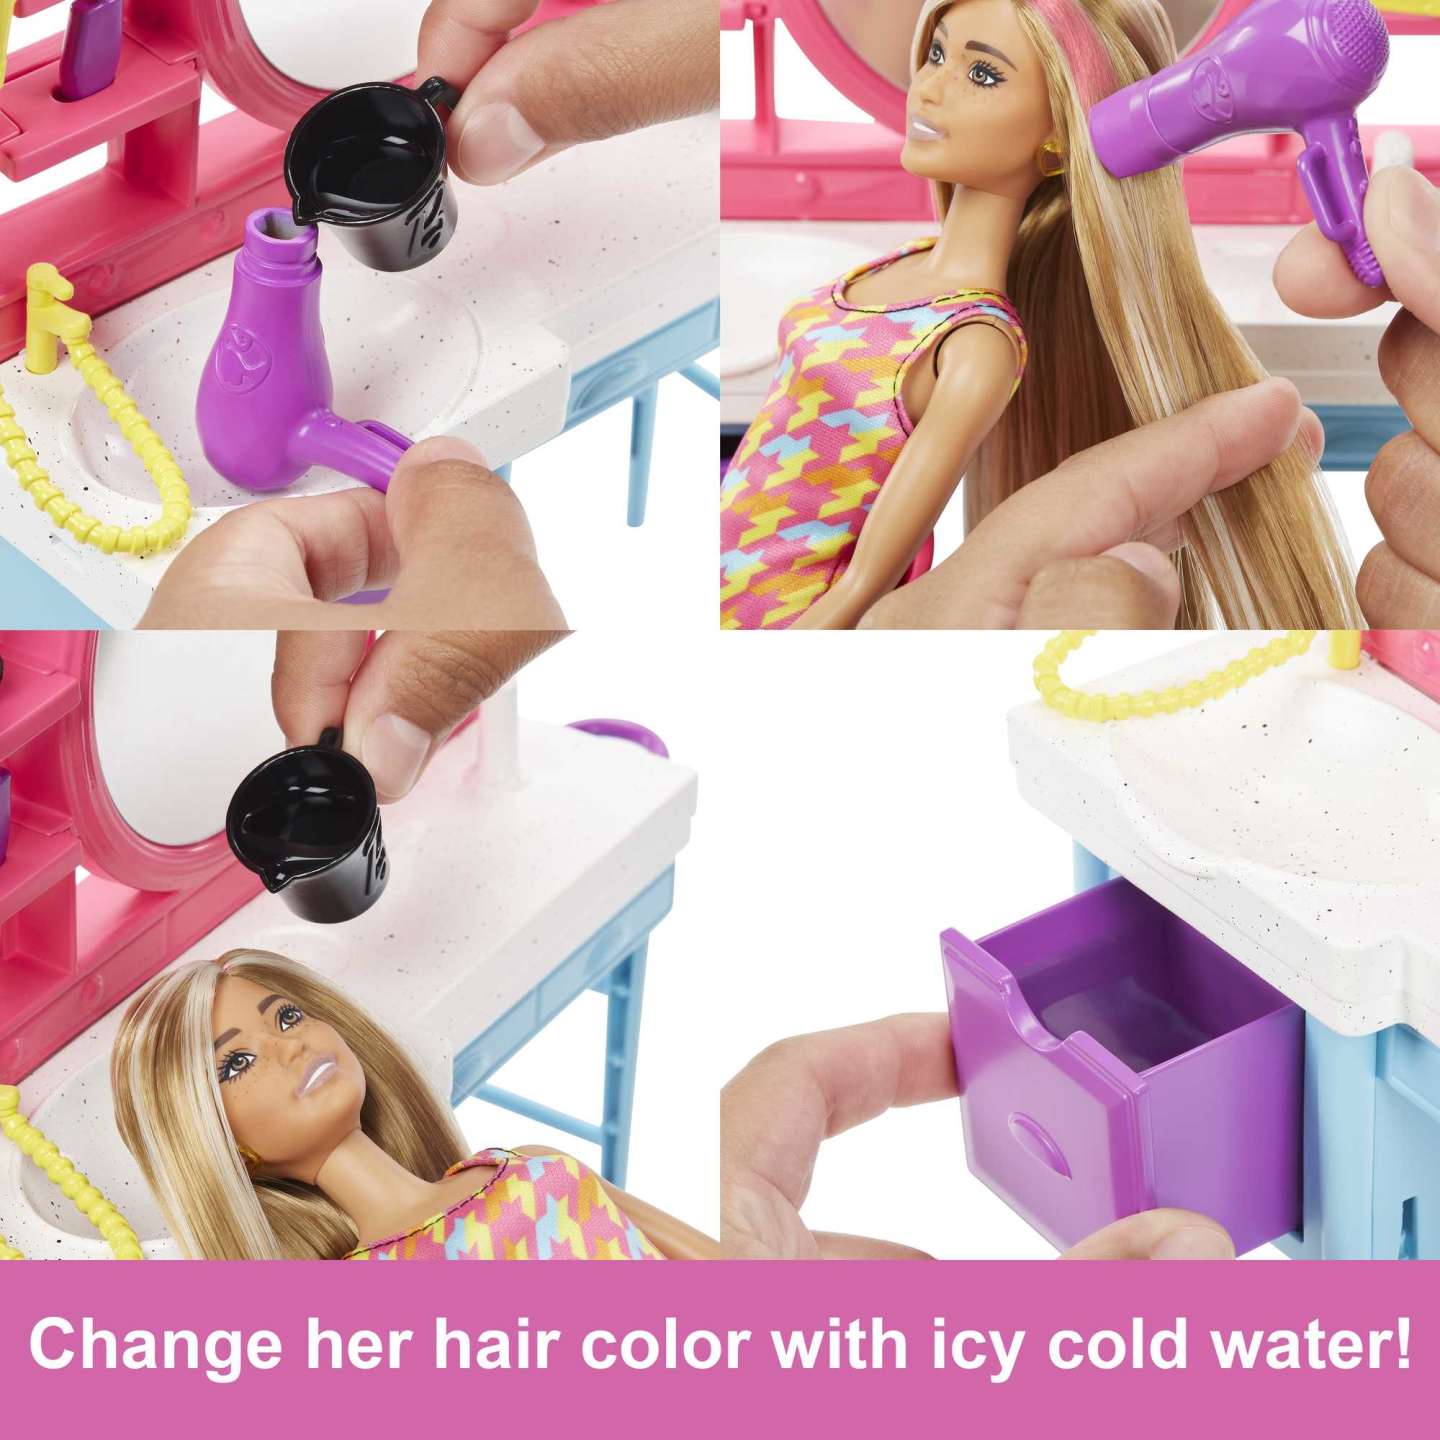 Barbie - Doll and Hair Salon Playset